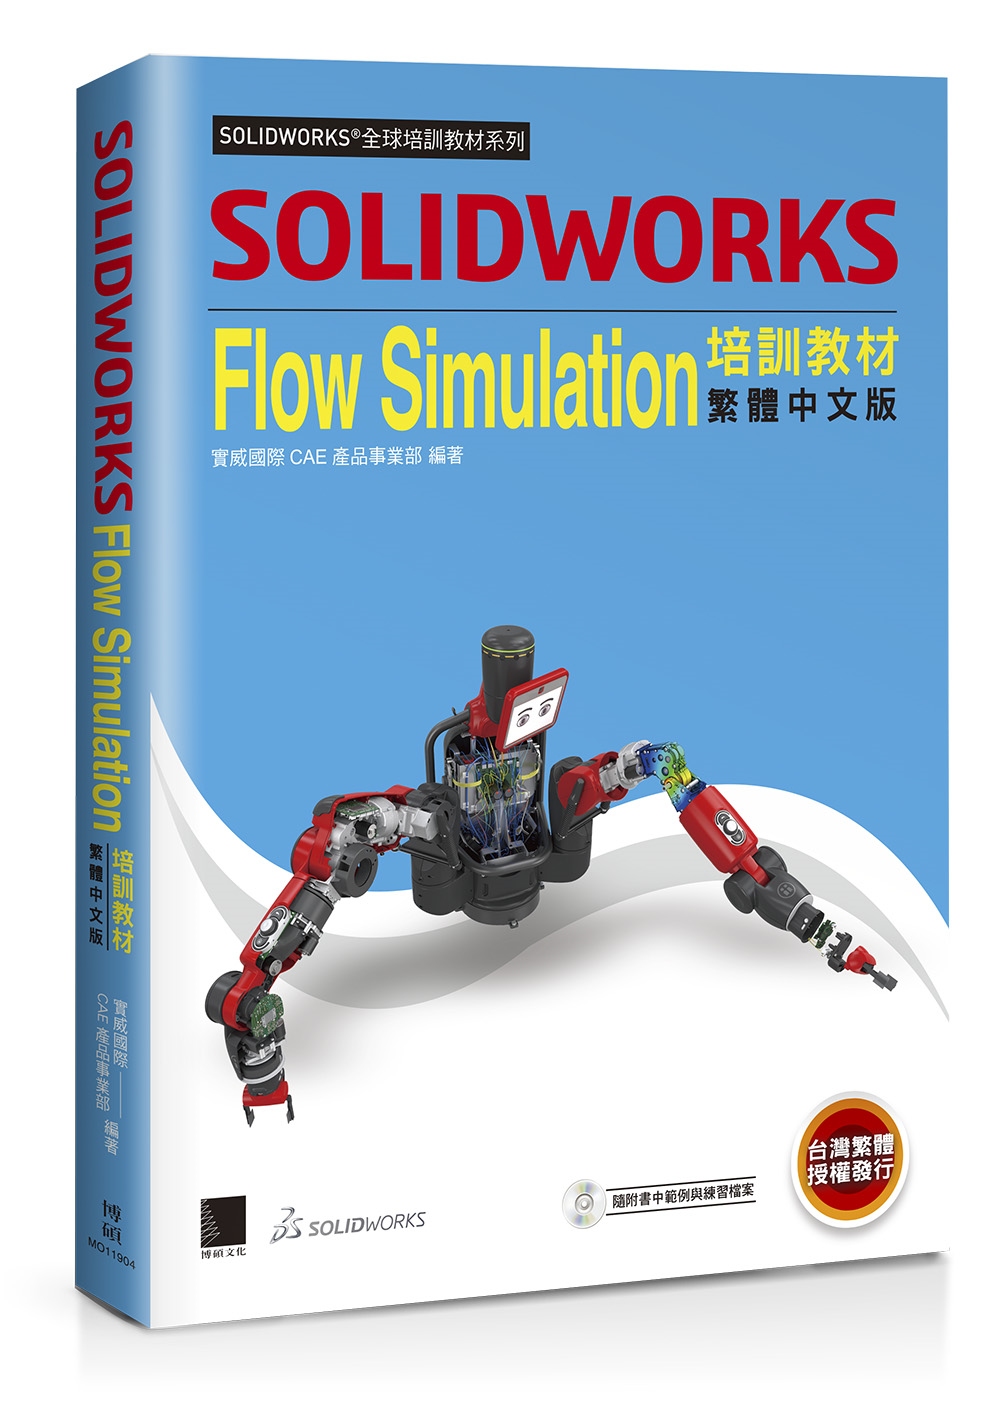 SOLIDWORKS Flow Simulation培訓教材...